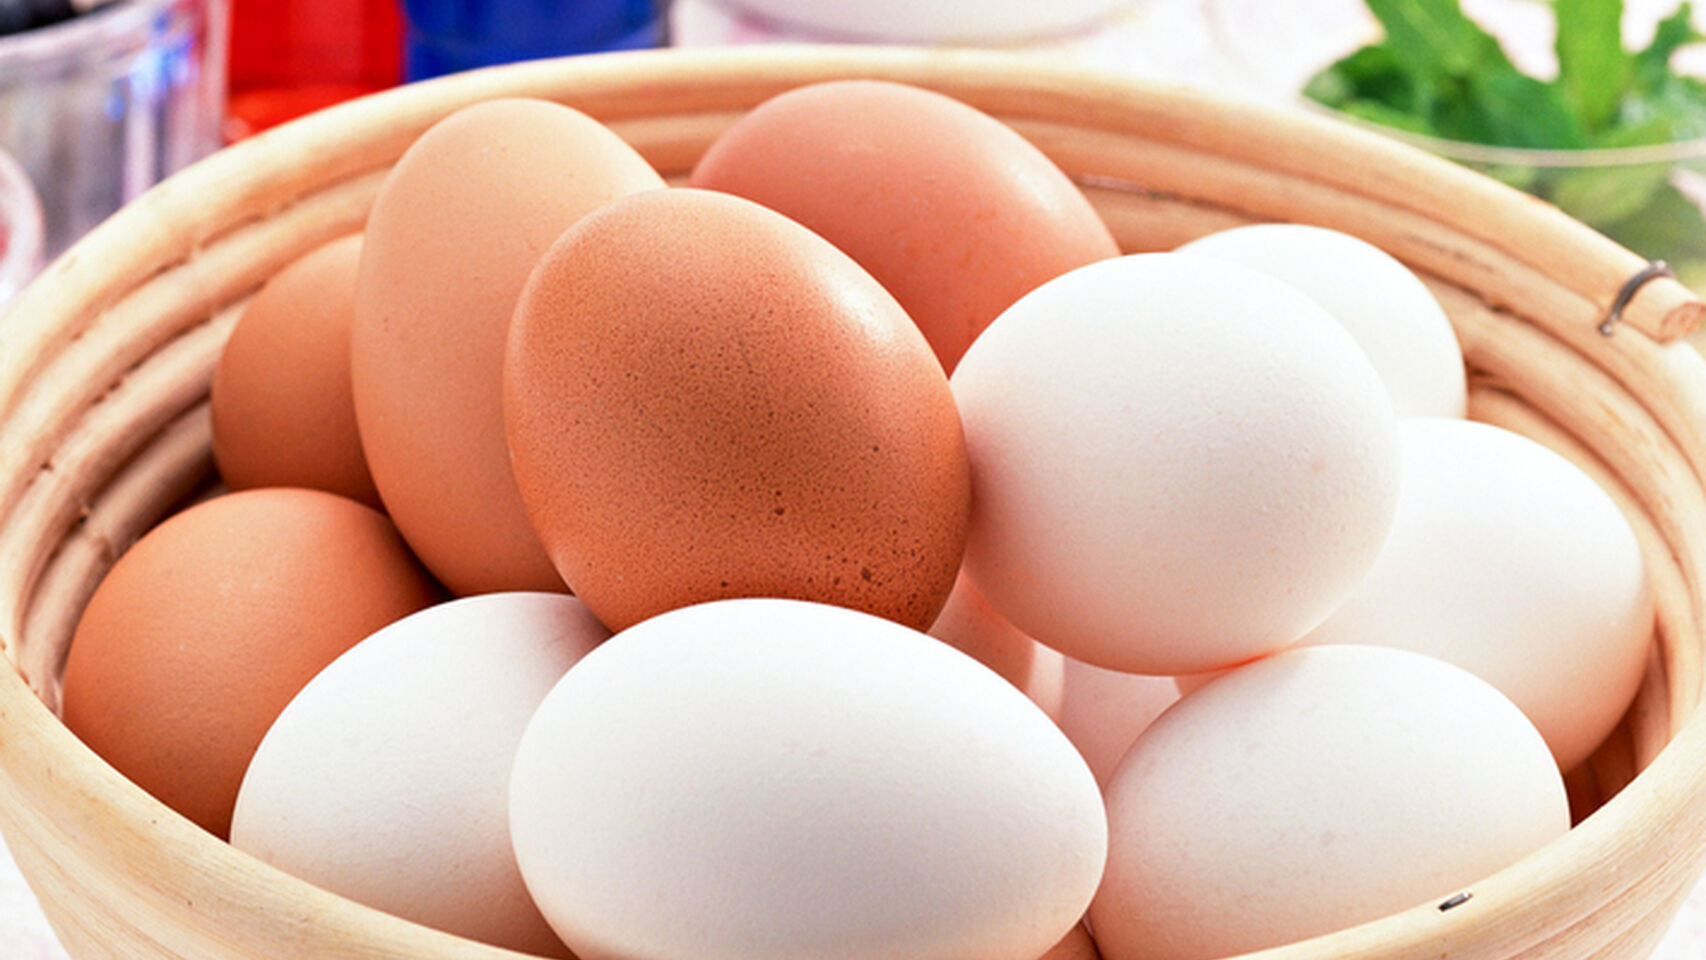 Una cesta de huevos morenos y blancos.